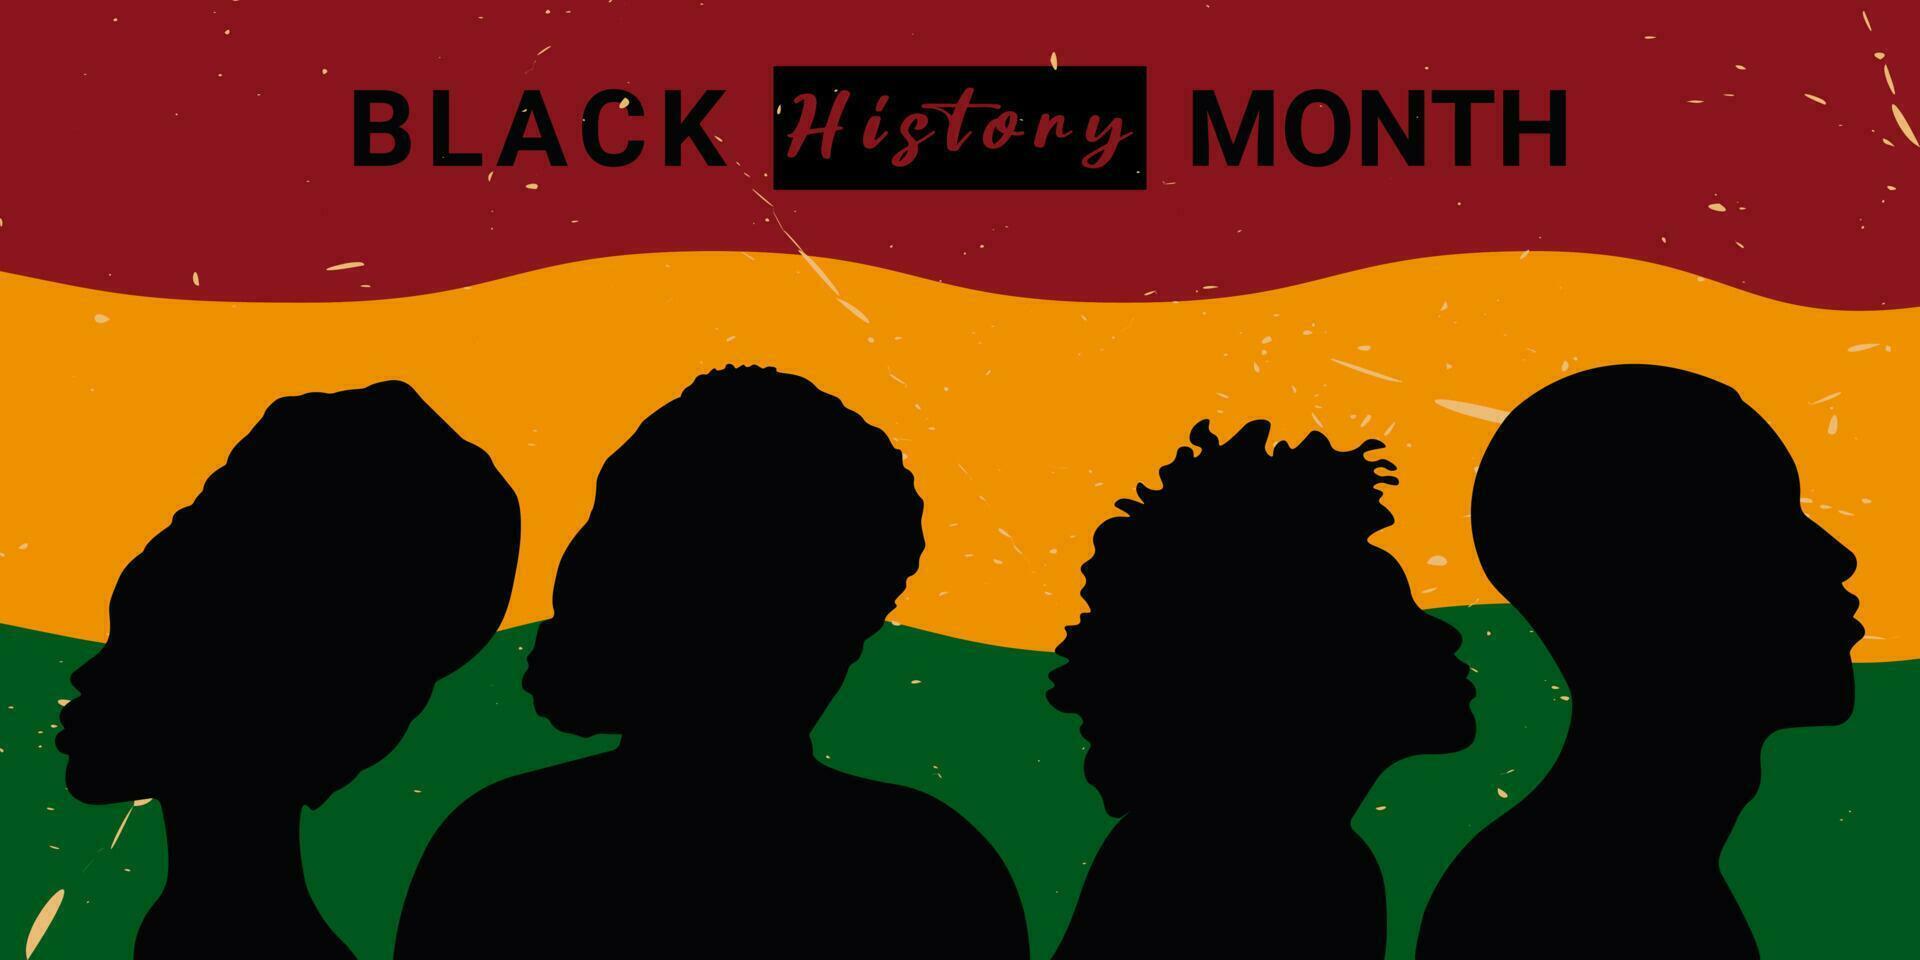 colorato minimo vettore illustrazione con silhouette donne e uomini nel retrò stile.celebrazione di nero storia mese ottobre e febbraio, africano americano le persone.